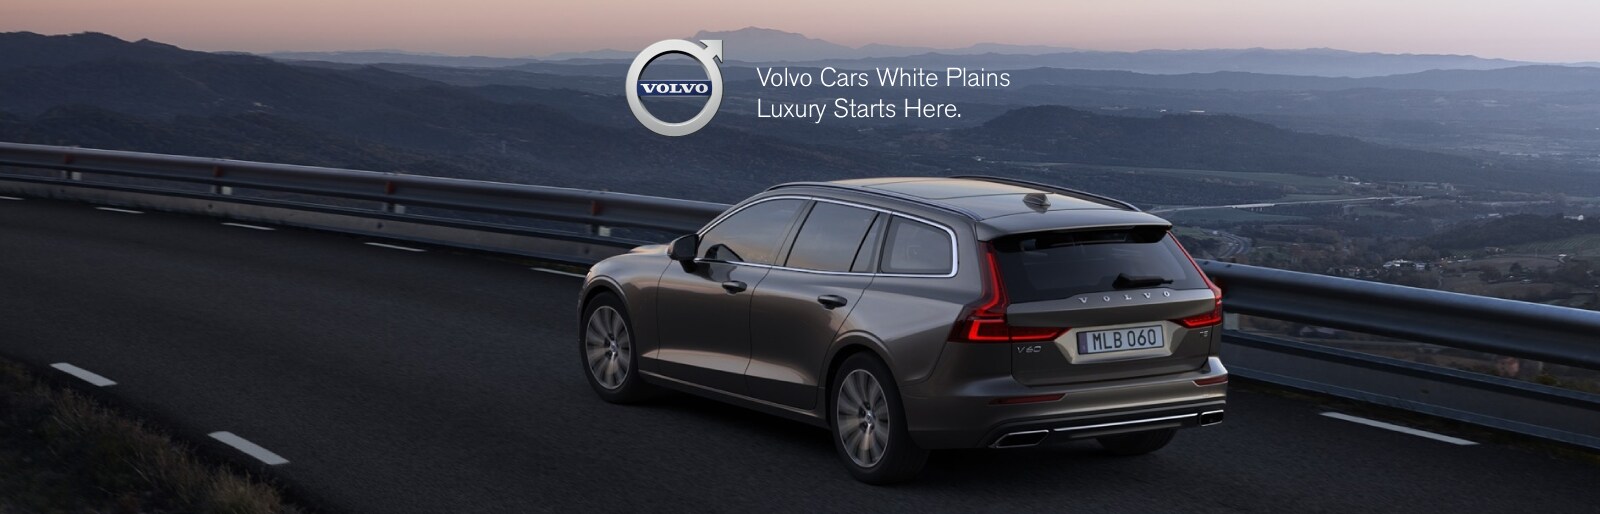 Volvo V90 lease deal image